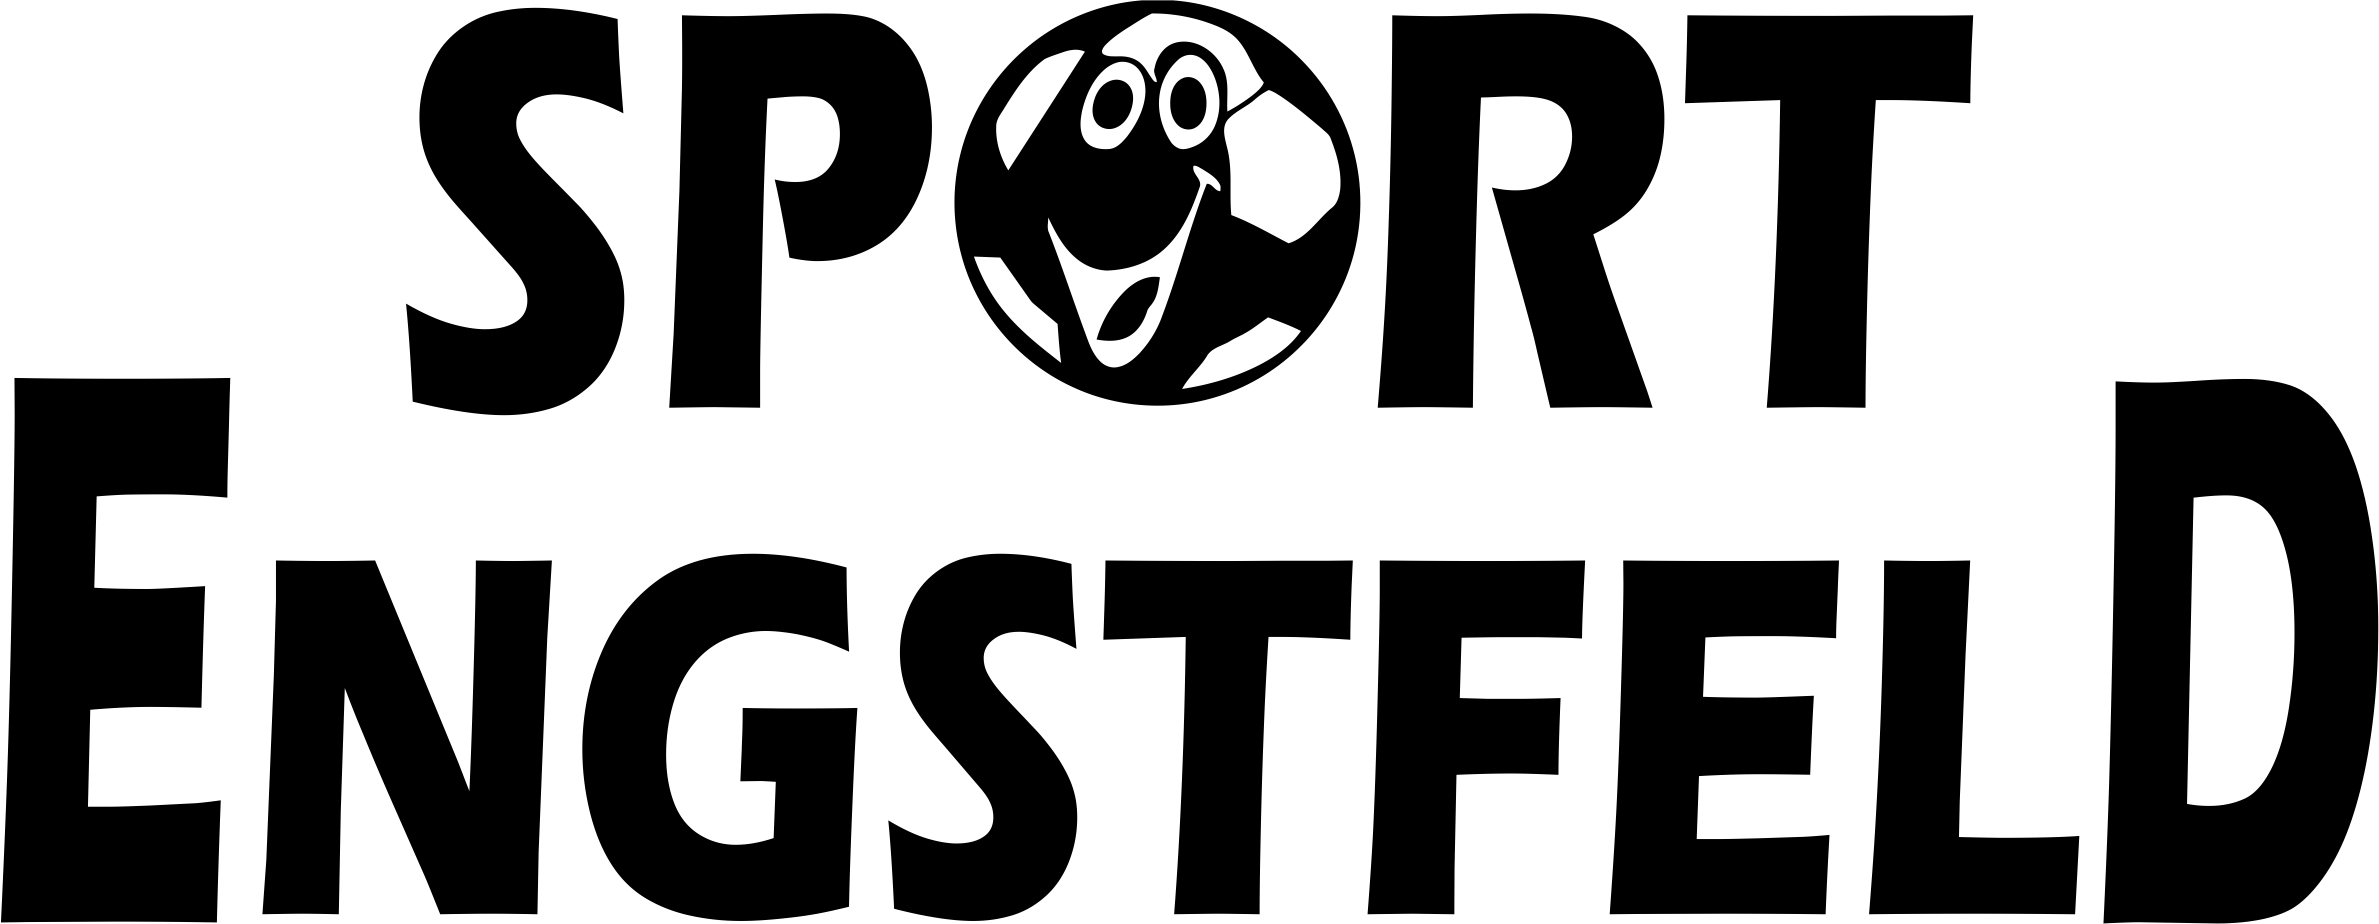 Highlander Logo 2